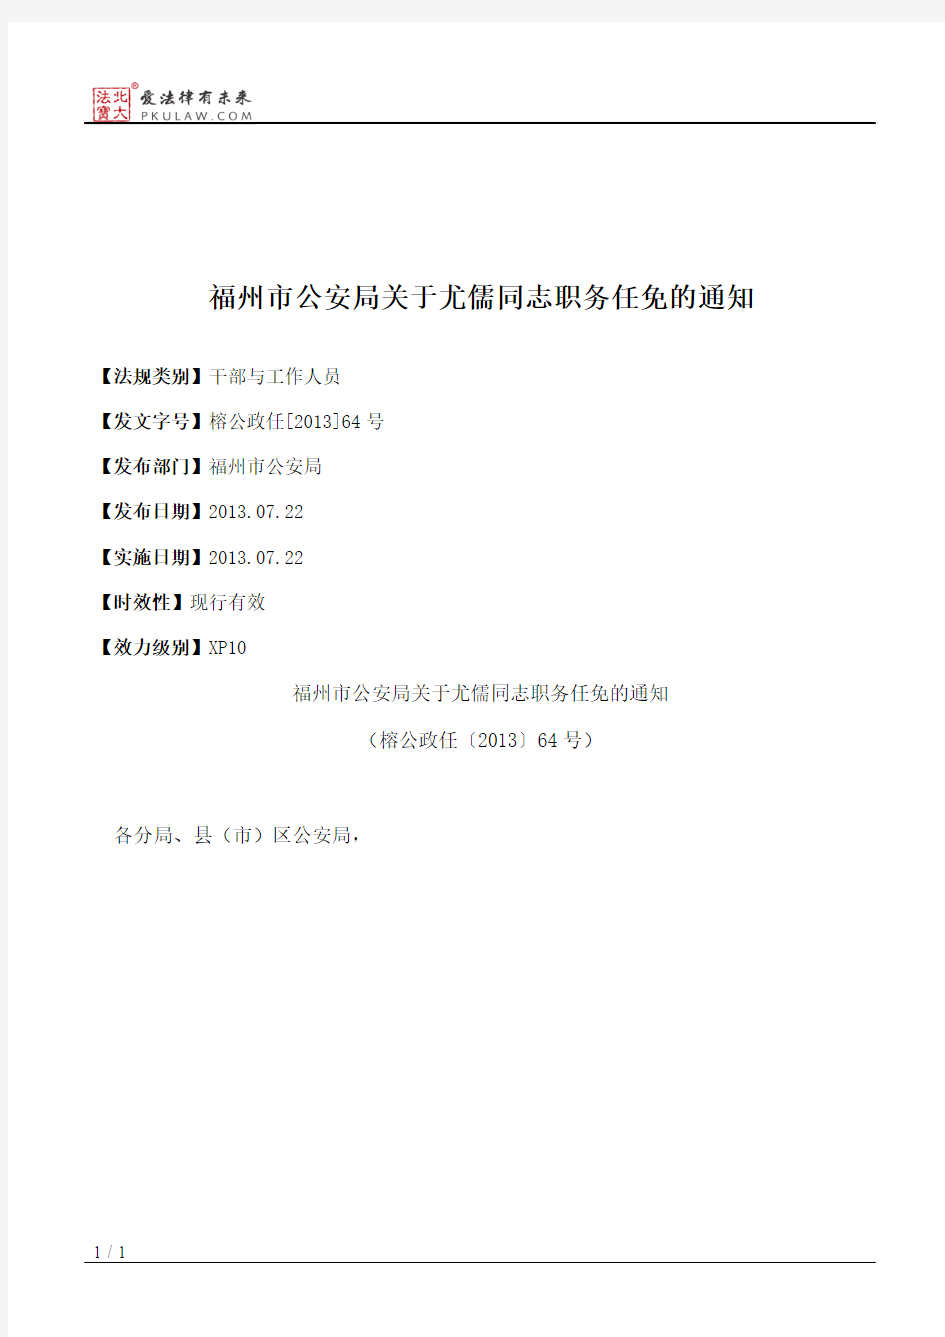 福州市公安局关于尤儒同志职务任免的通知